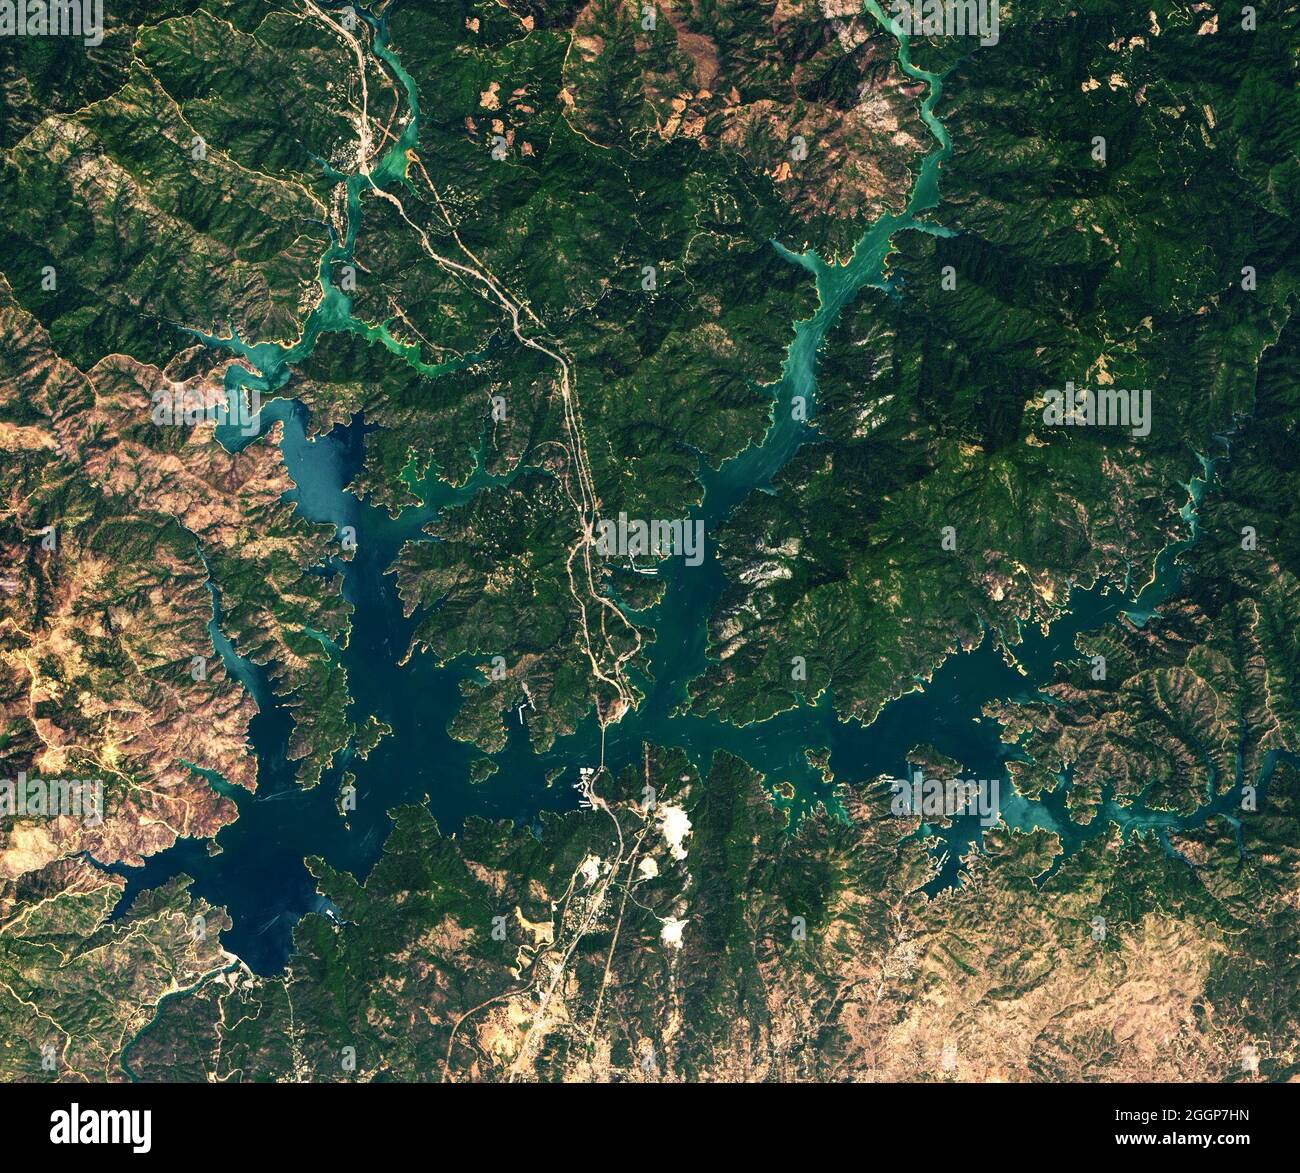 Questa immagine del lago Shasta della California è stata catturata dalla Operational Land Imager (oli) su Landsat 8 il 13 luglio 2019. Foto Stock